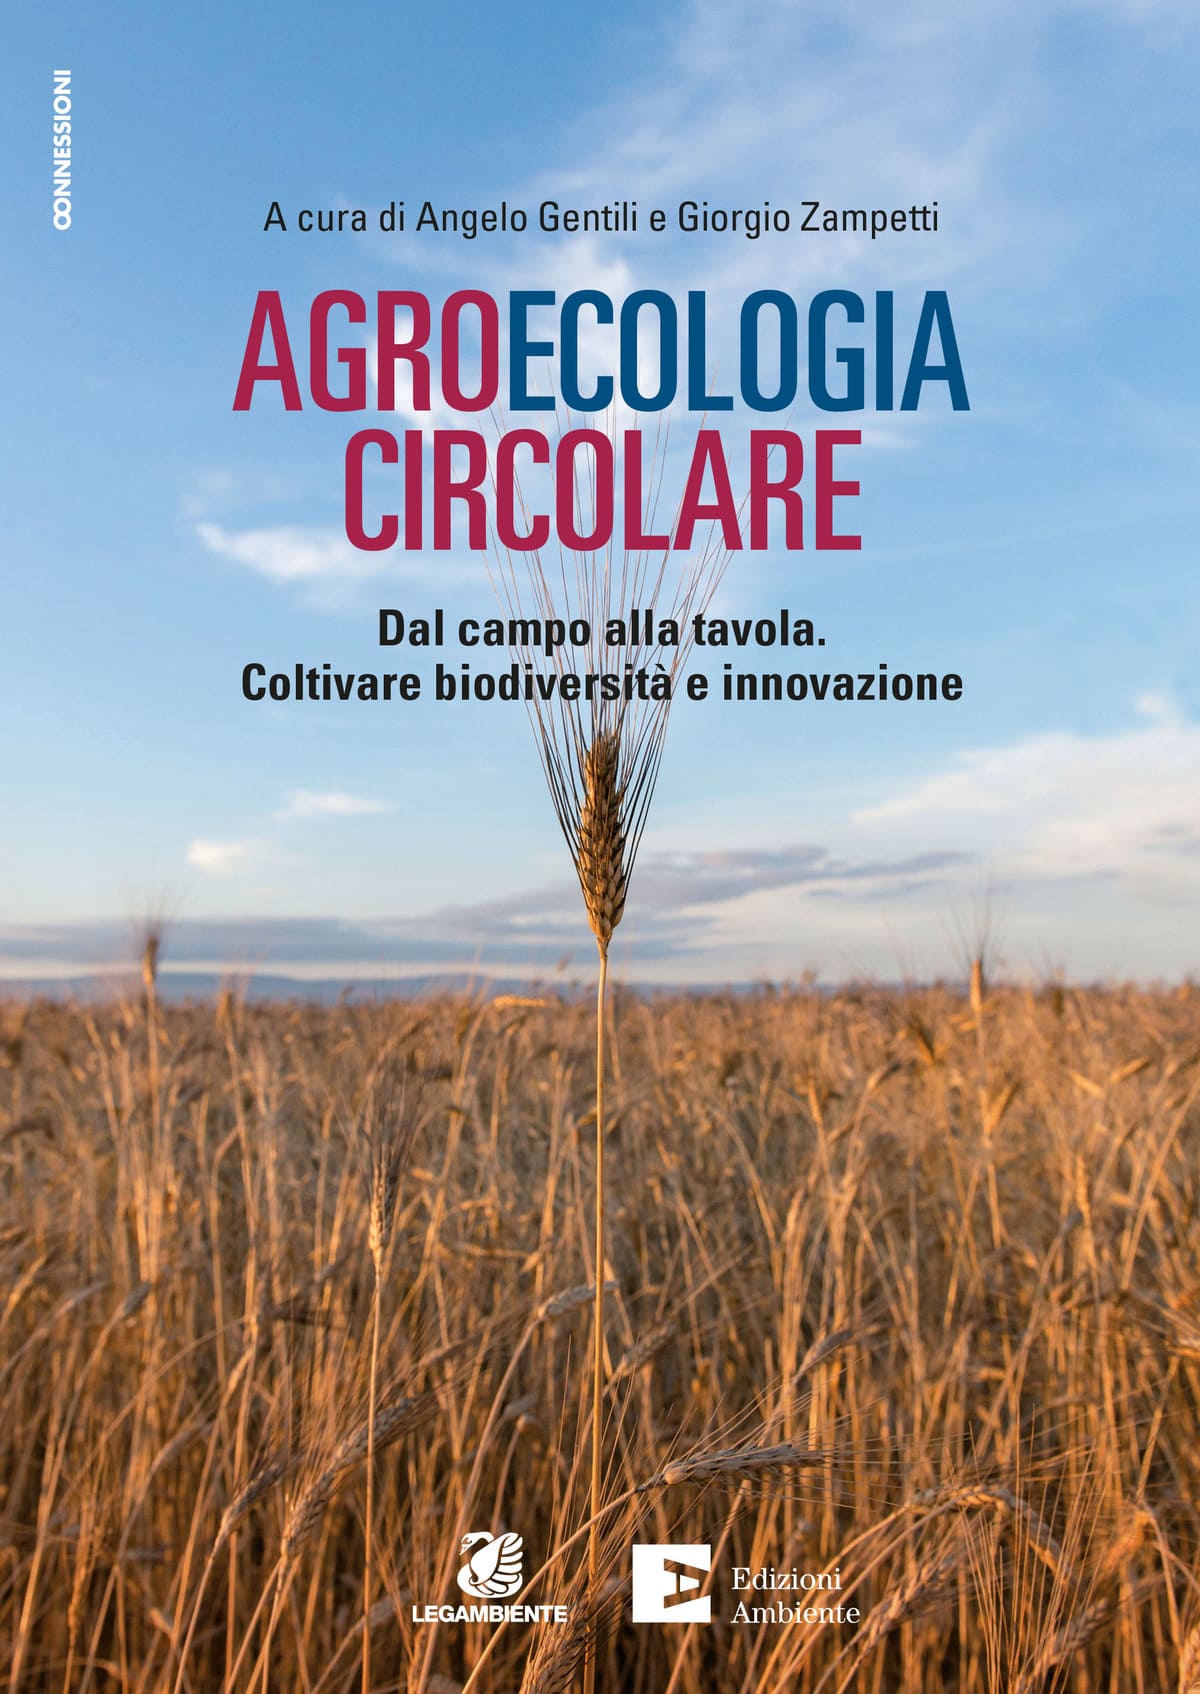 Agroecologia circolare - Dal campo alla tavola